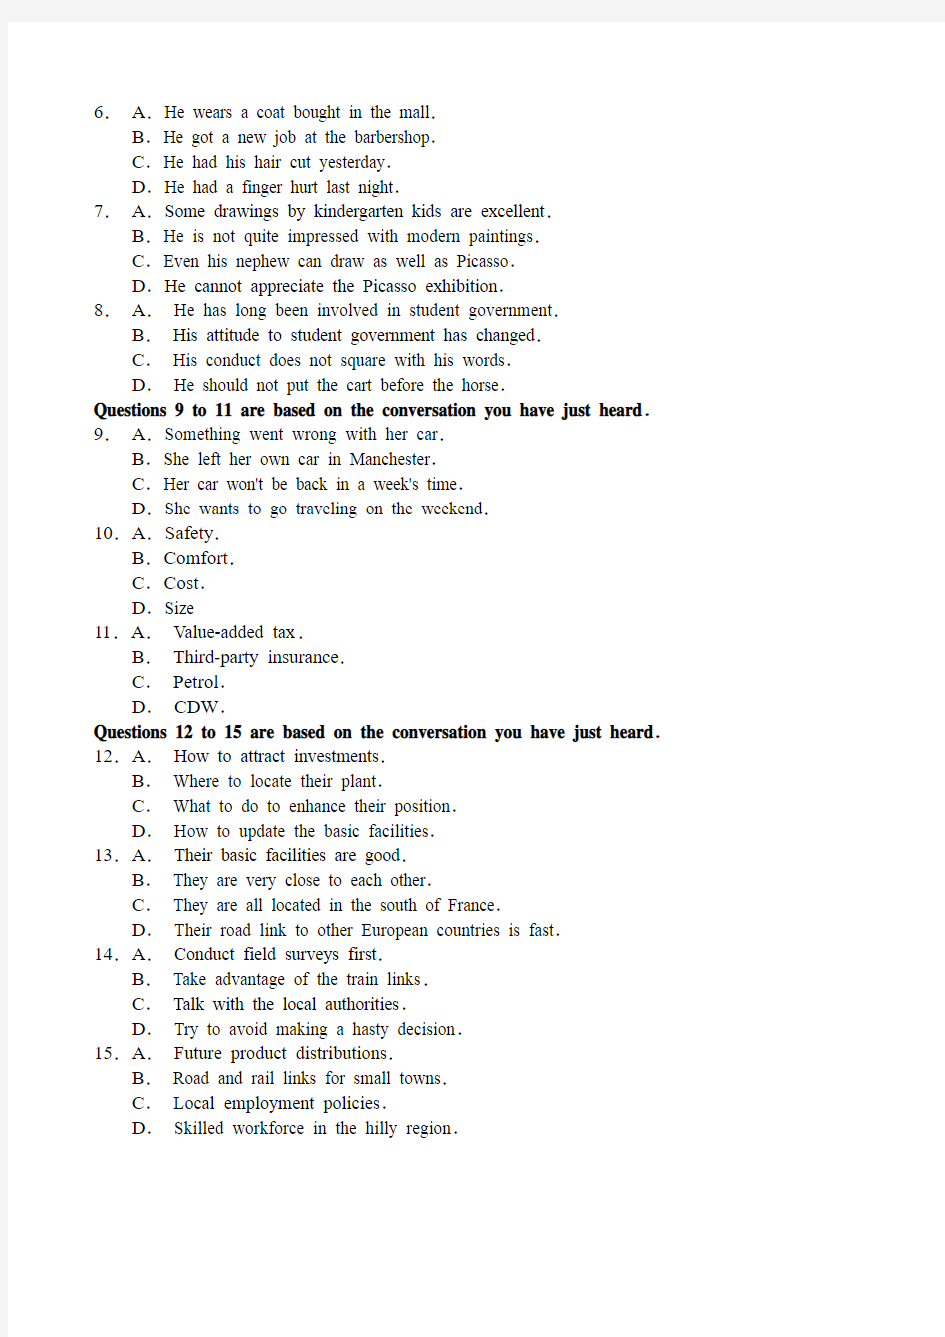 2014年6月英语六级真题及答案解析-第二套